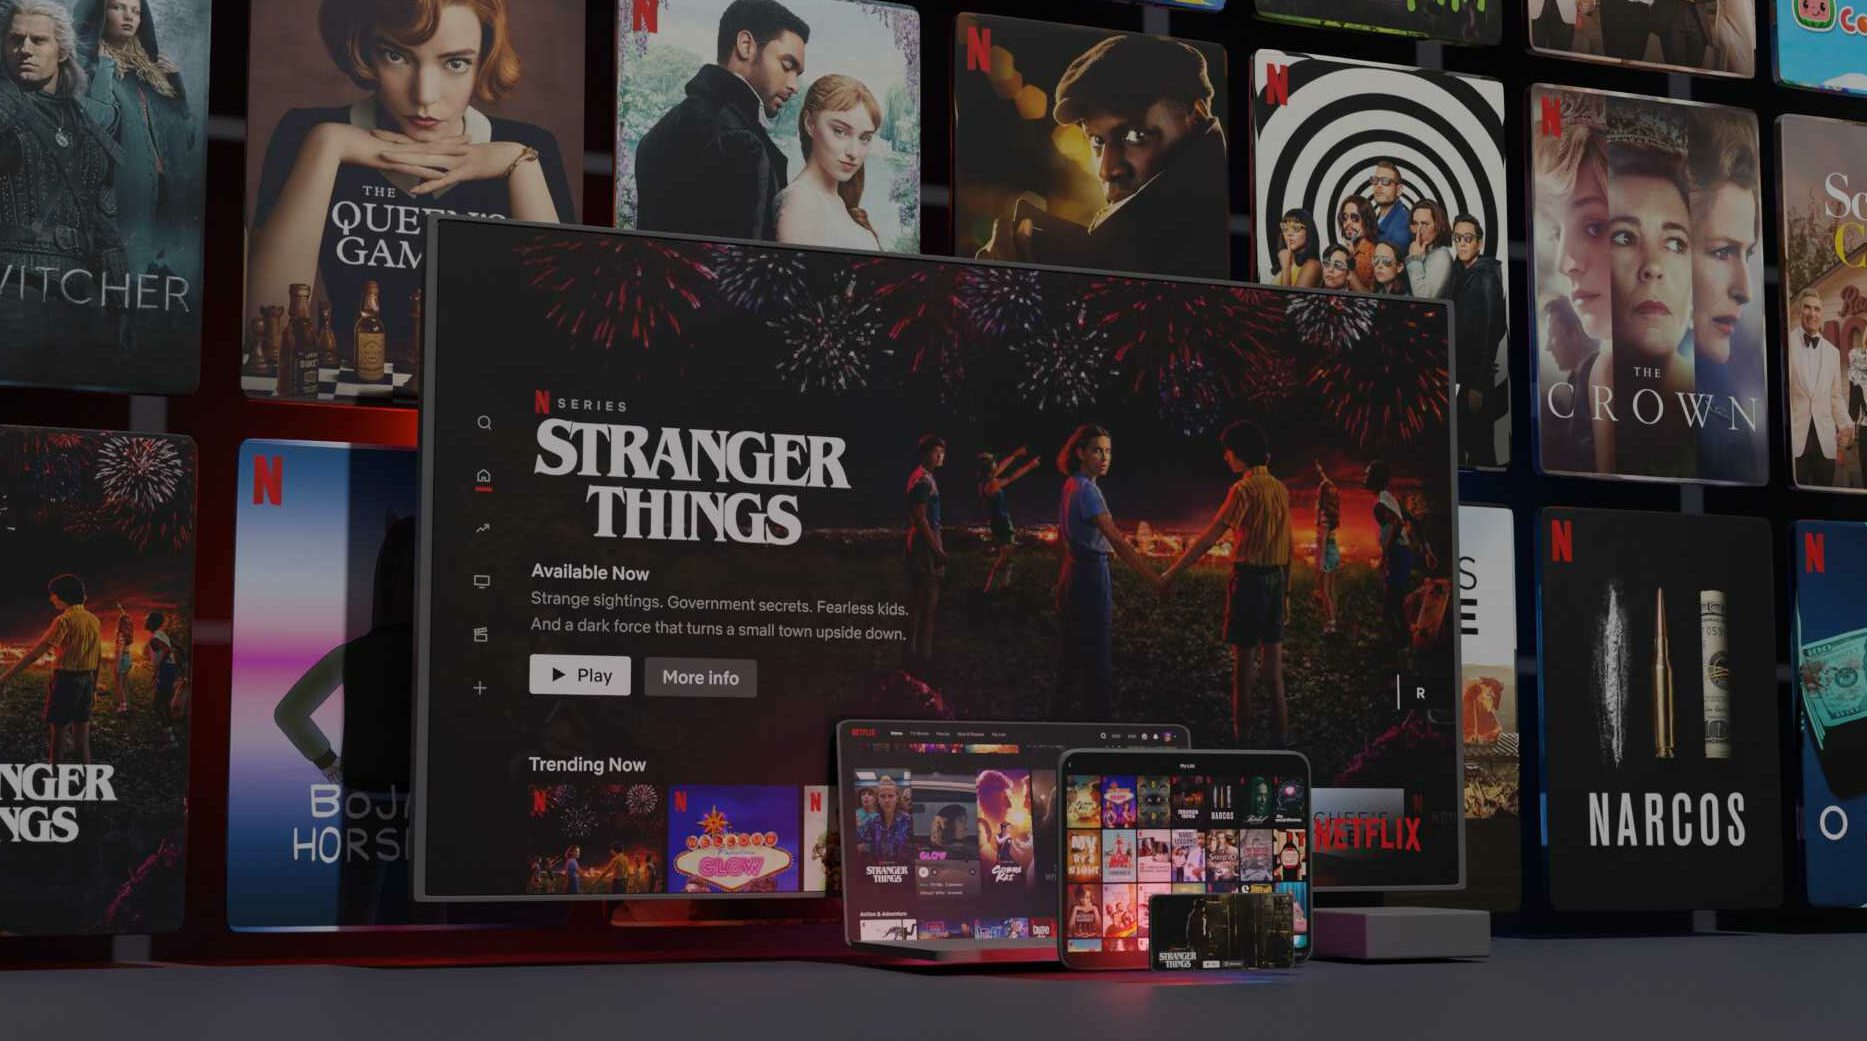 Şifre Paylaşım Yasağı Sayesinde Netflix’in Gelirleri ve Abone Sayısı Artabilir – Evercore